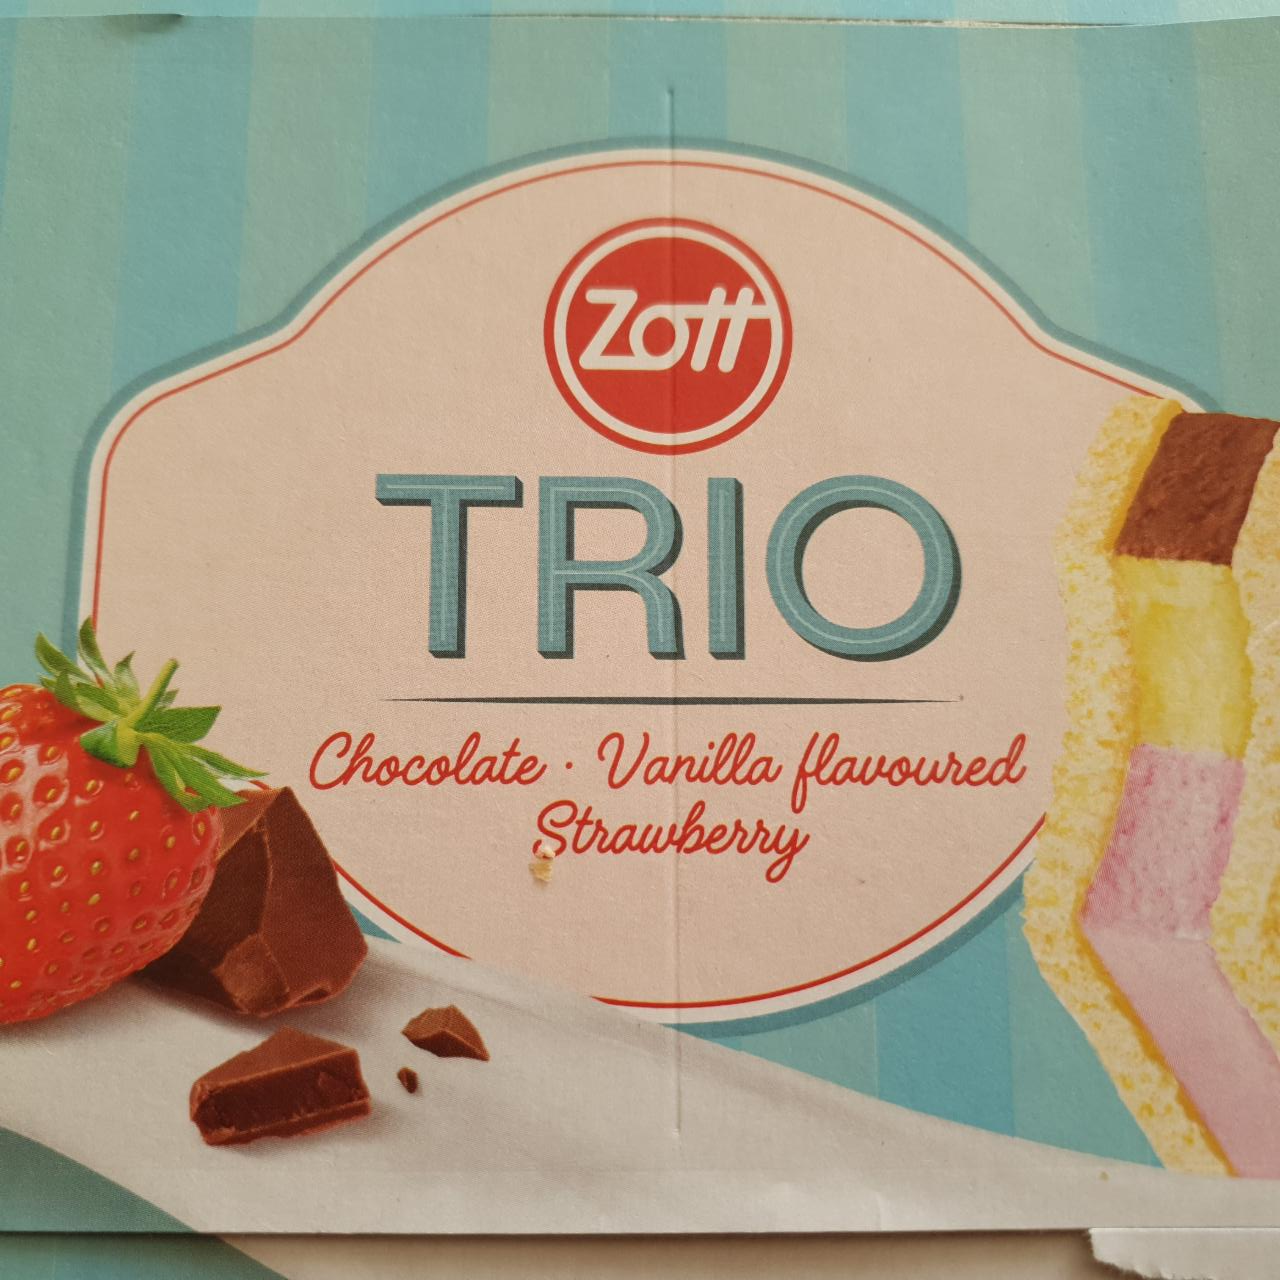 Fotografie - Trio Chocolate Vanilla flavoured Strawberry Zott